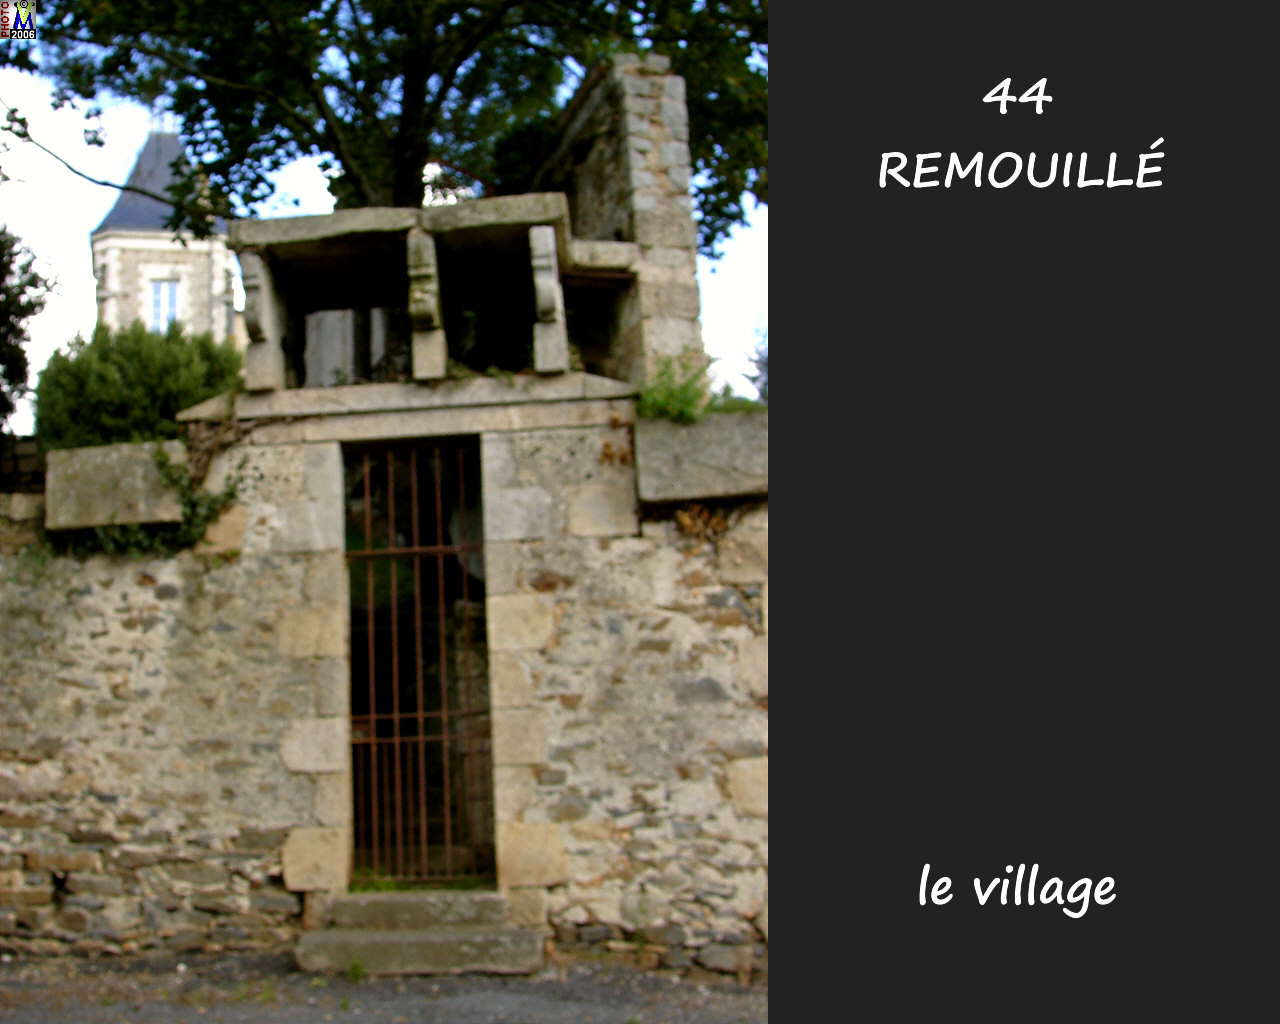 44REMOUILLE_village_102.jpg